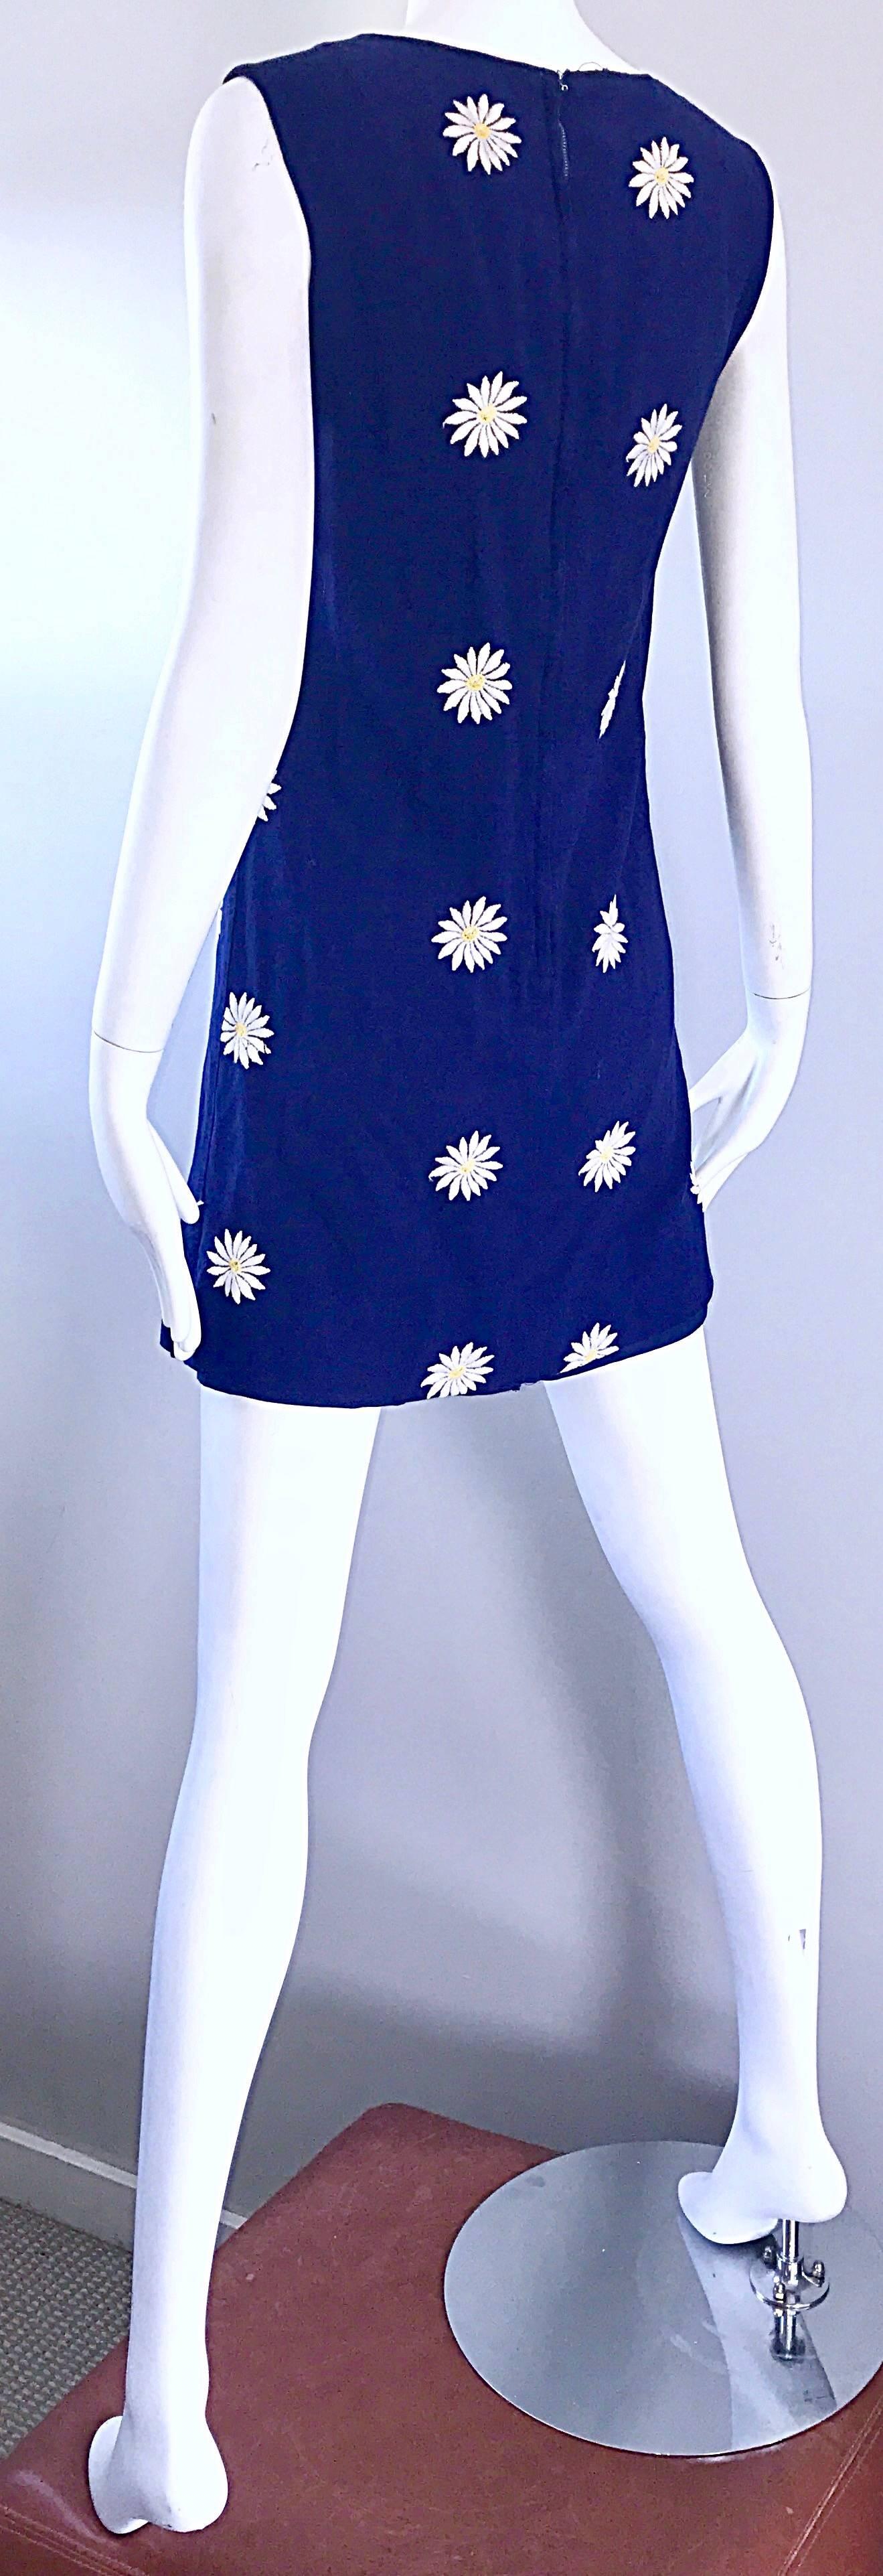 60s daisy dress